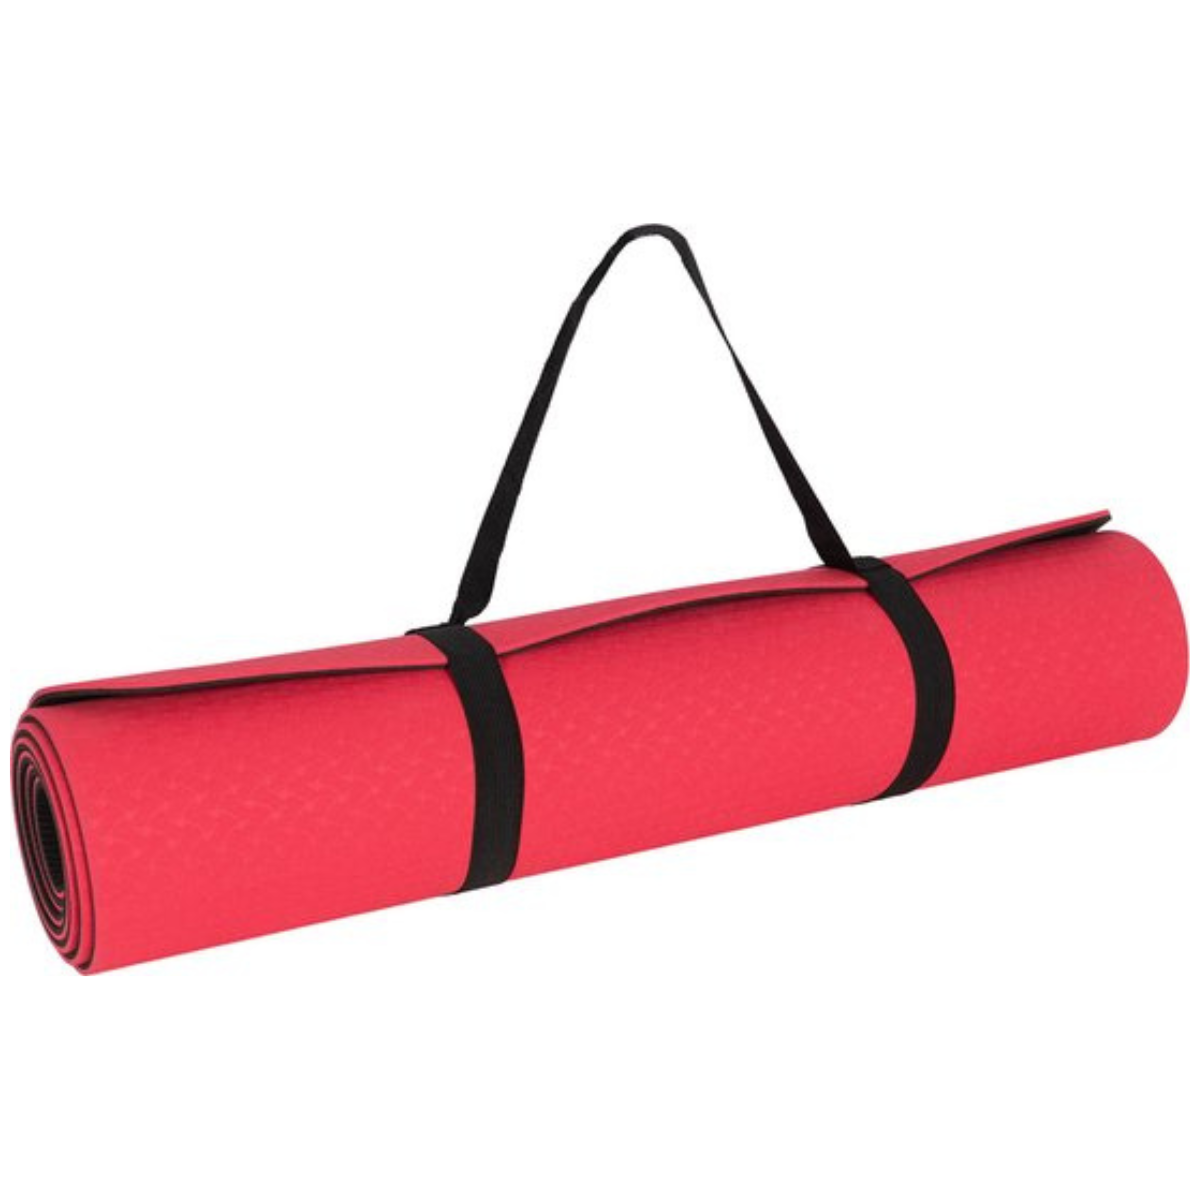 New Sports Fitness mat - Yoga mat - Sports mat with anti-slip - Pink - Black